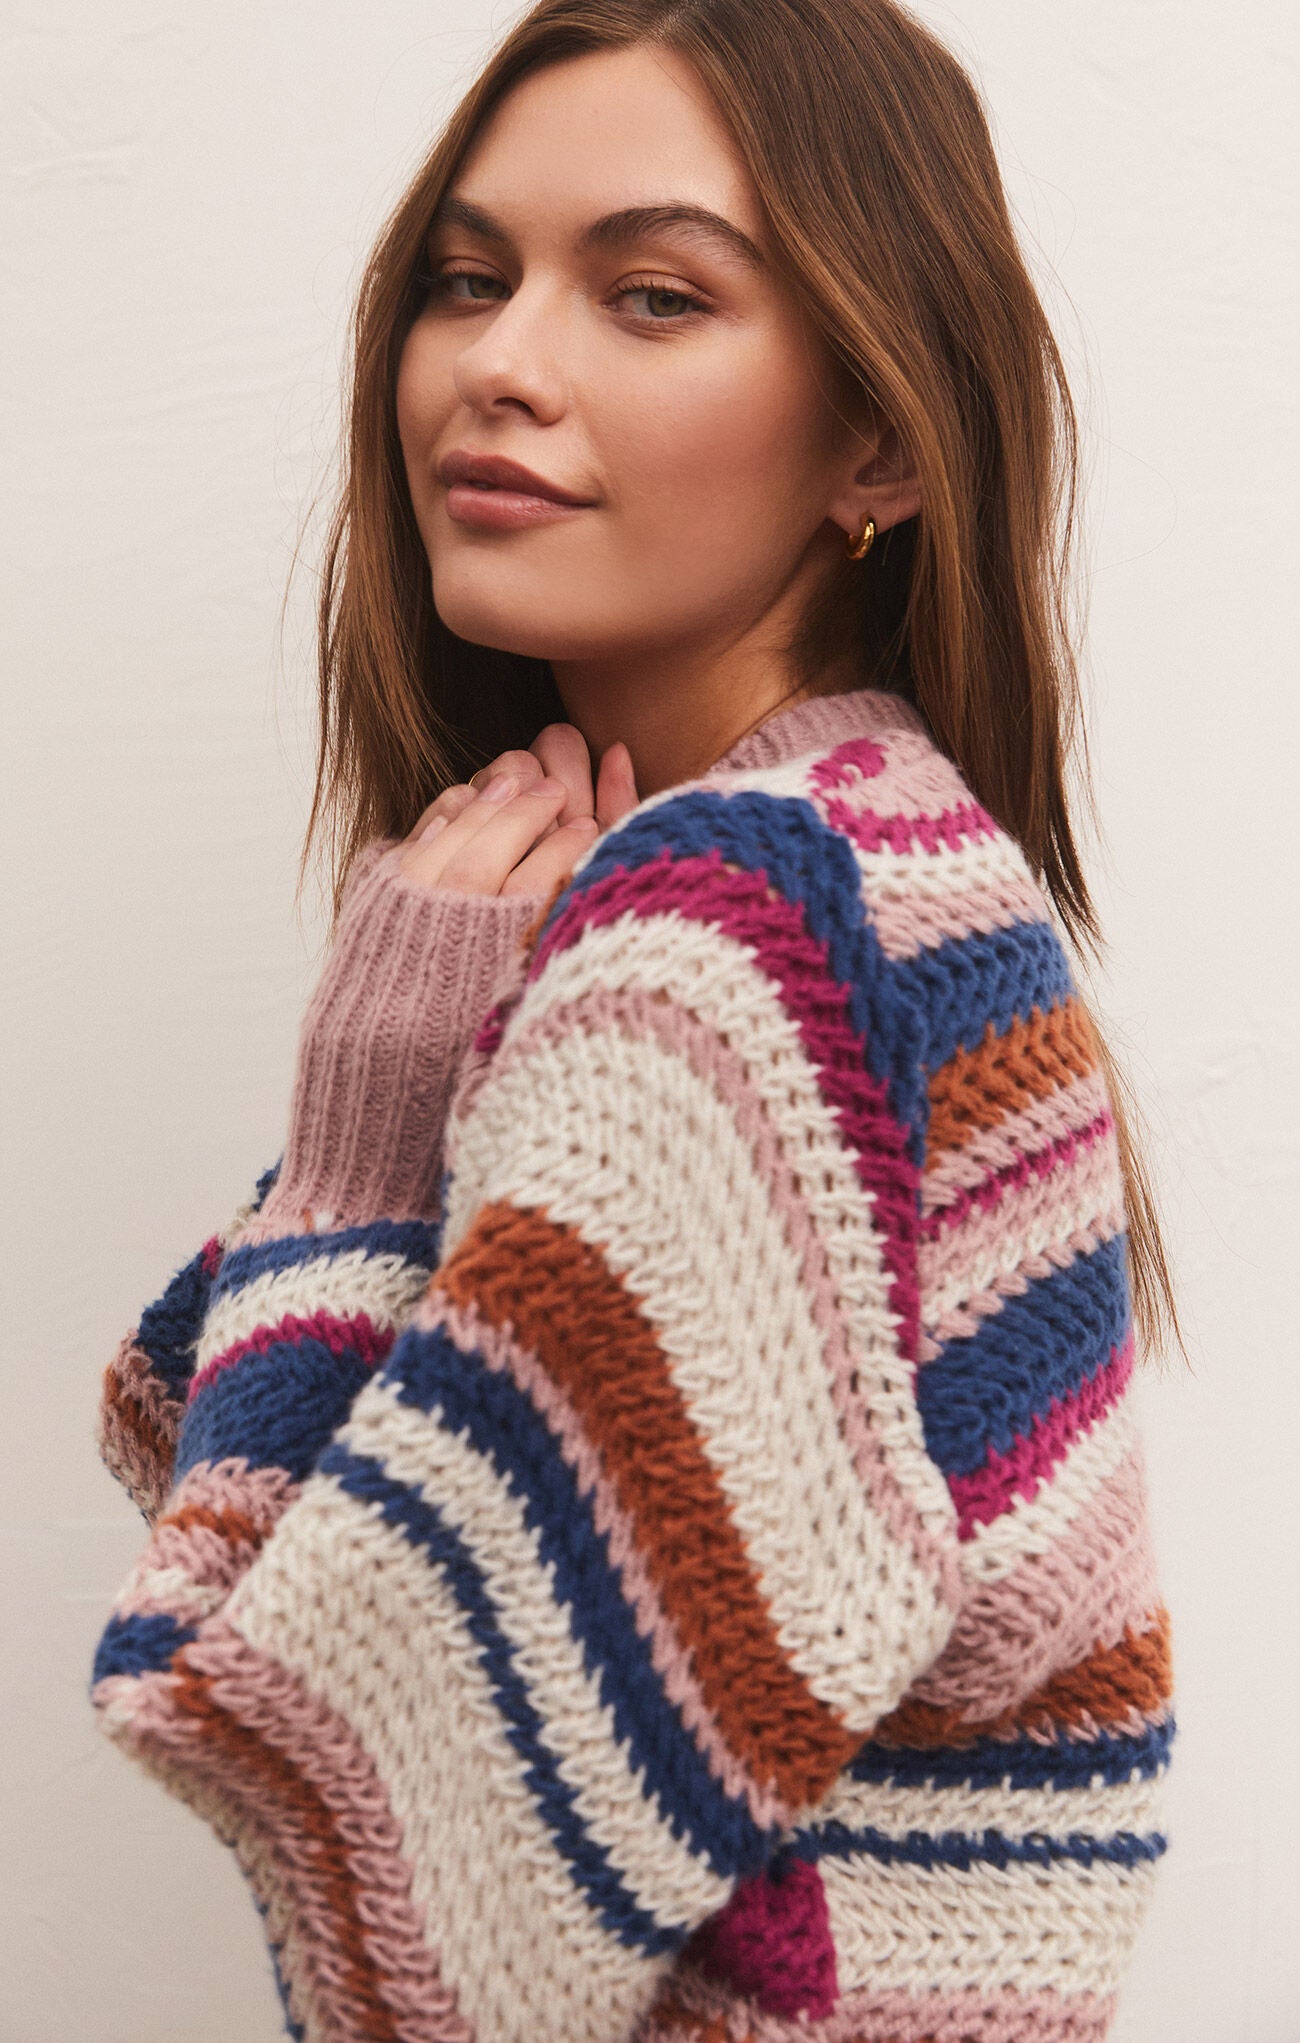 The Asheville Stripe Sweater-Magenta